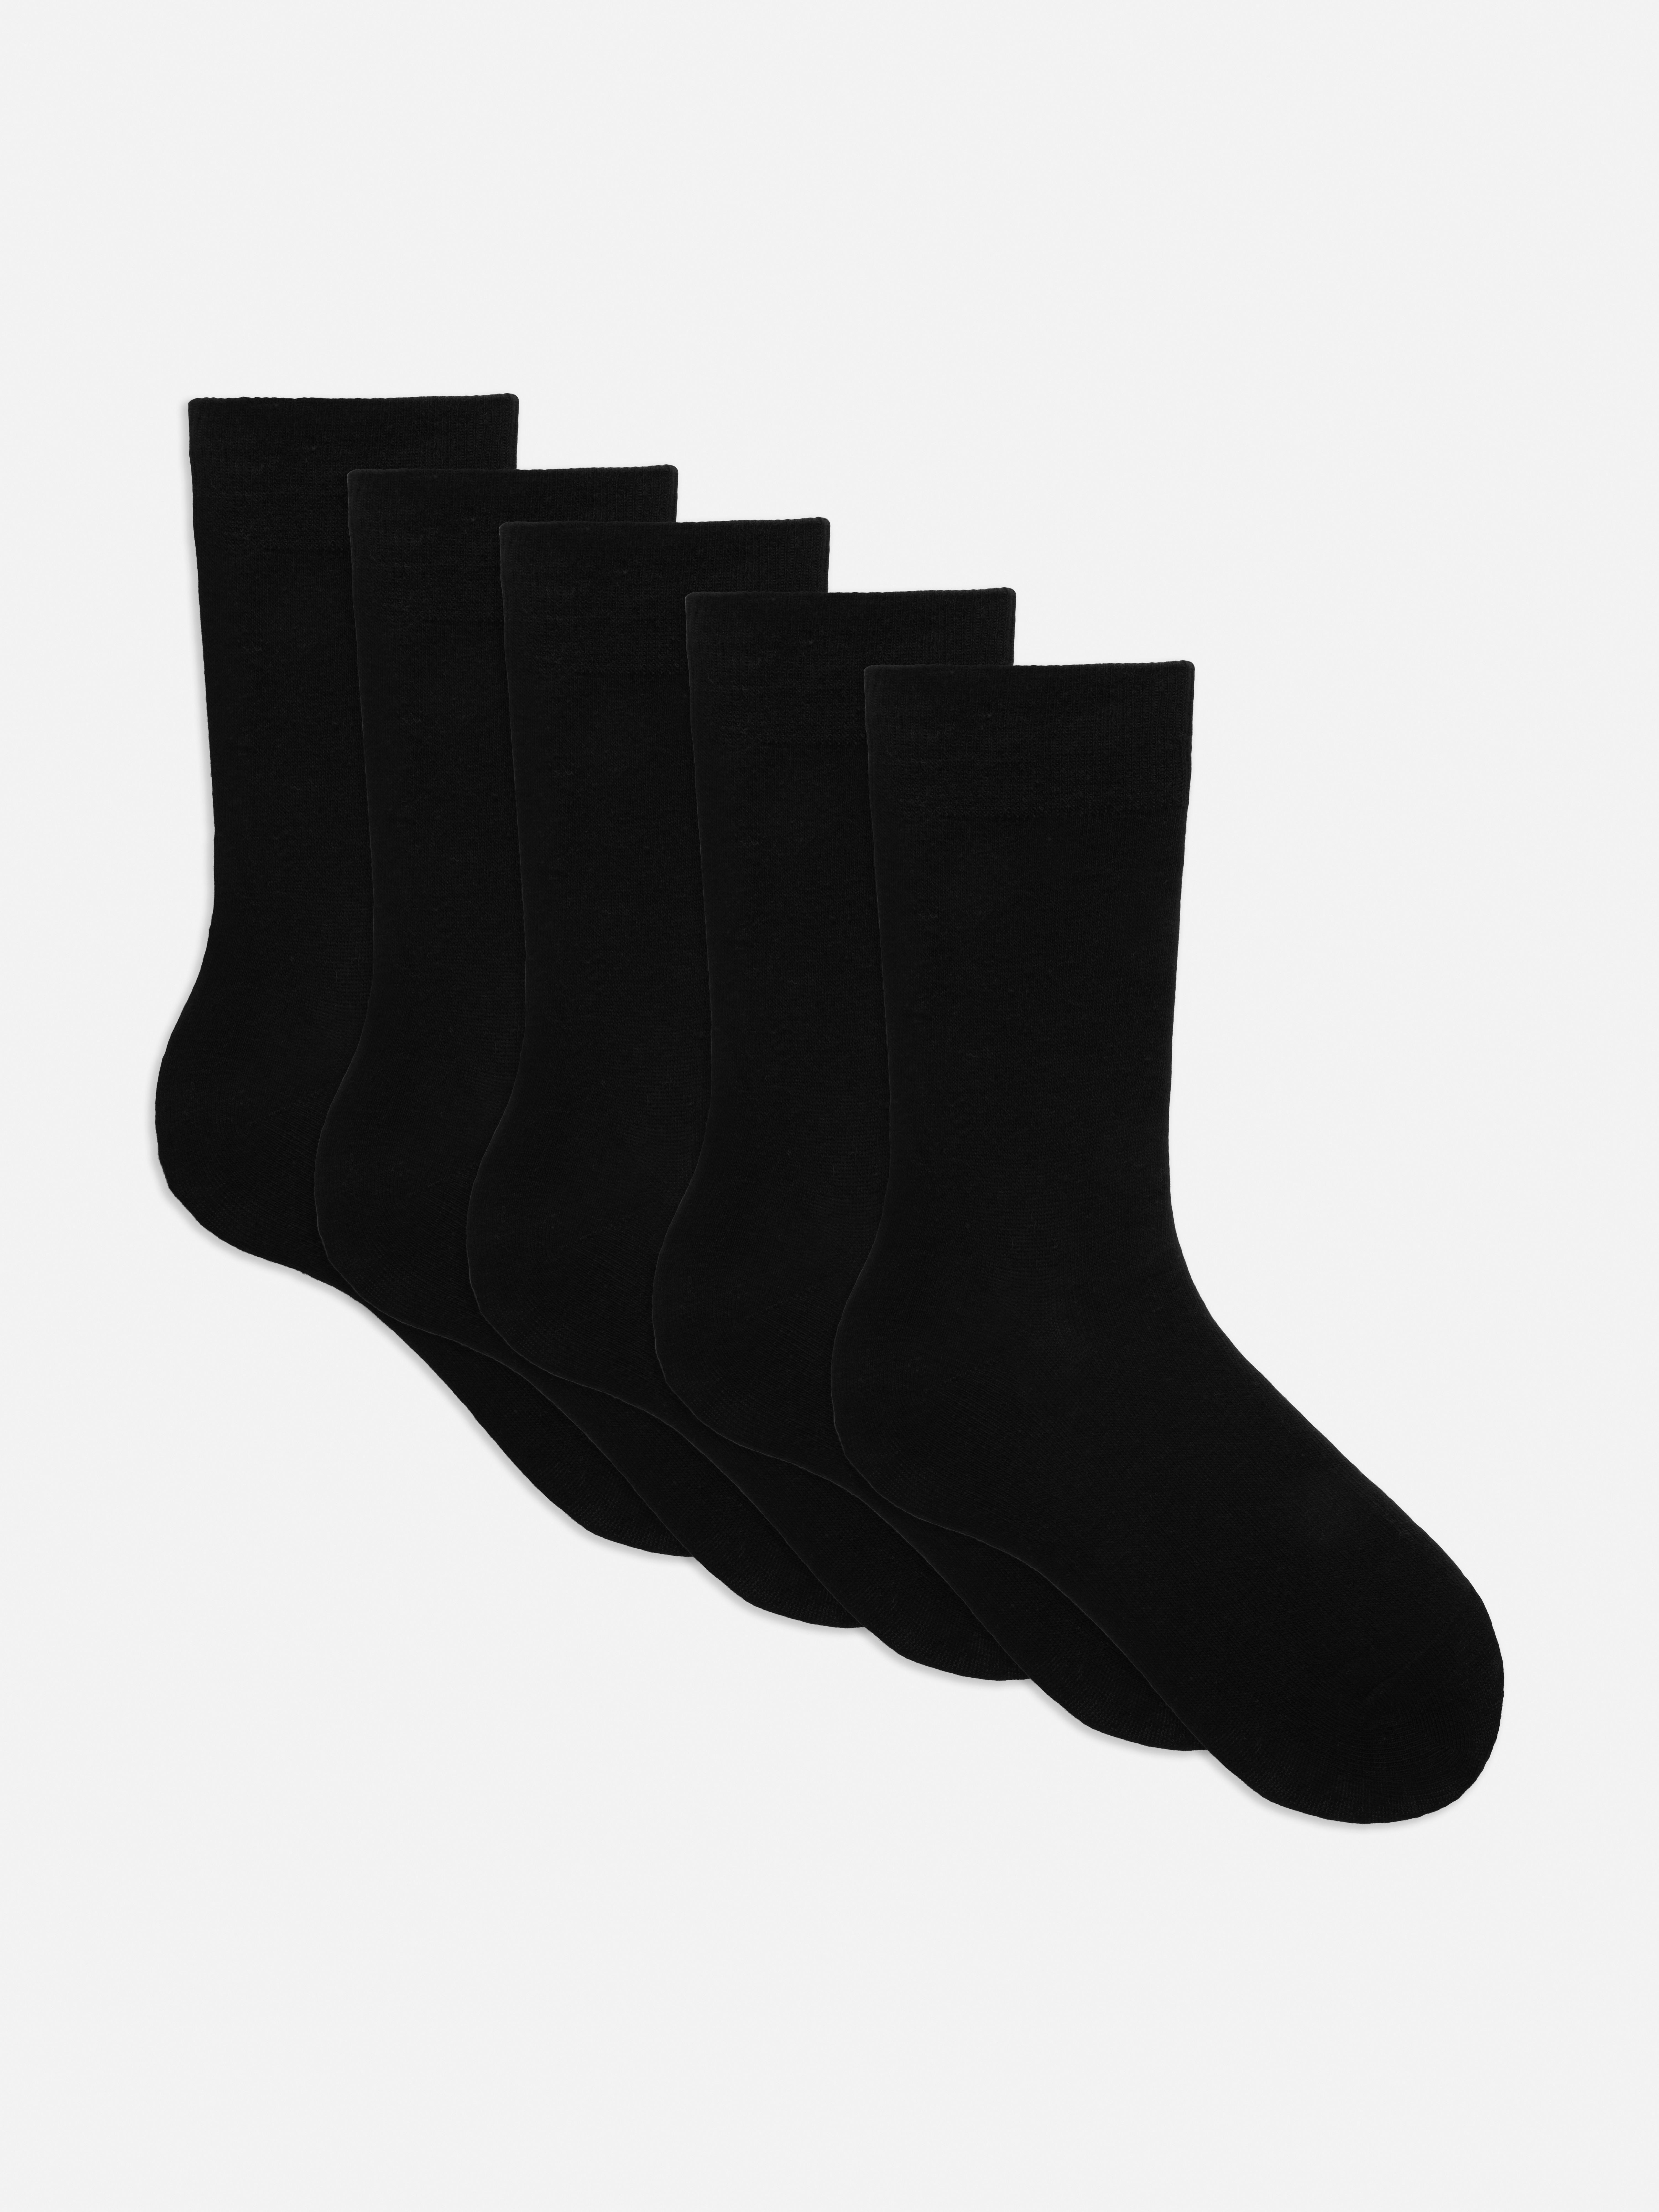 5-Pack Socks | Men's Socks | Men's Underwear | Men's Style | Our ...